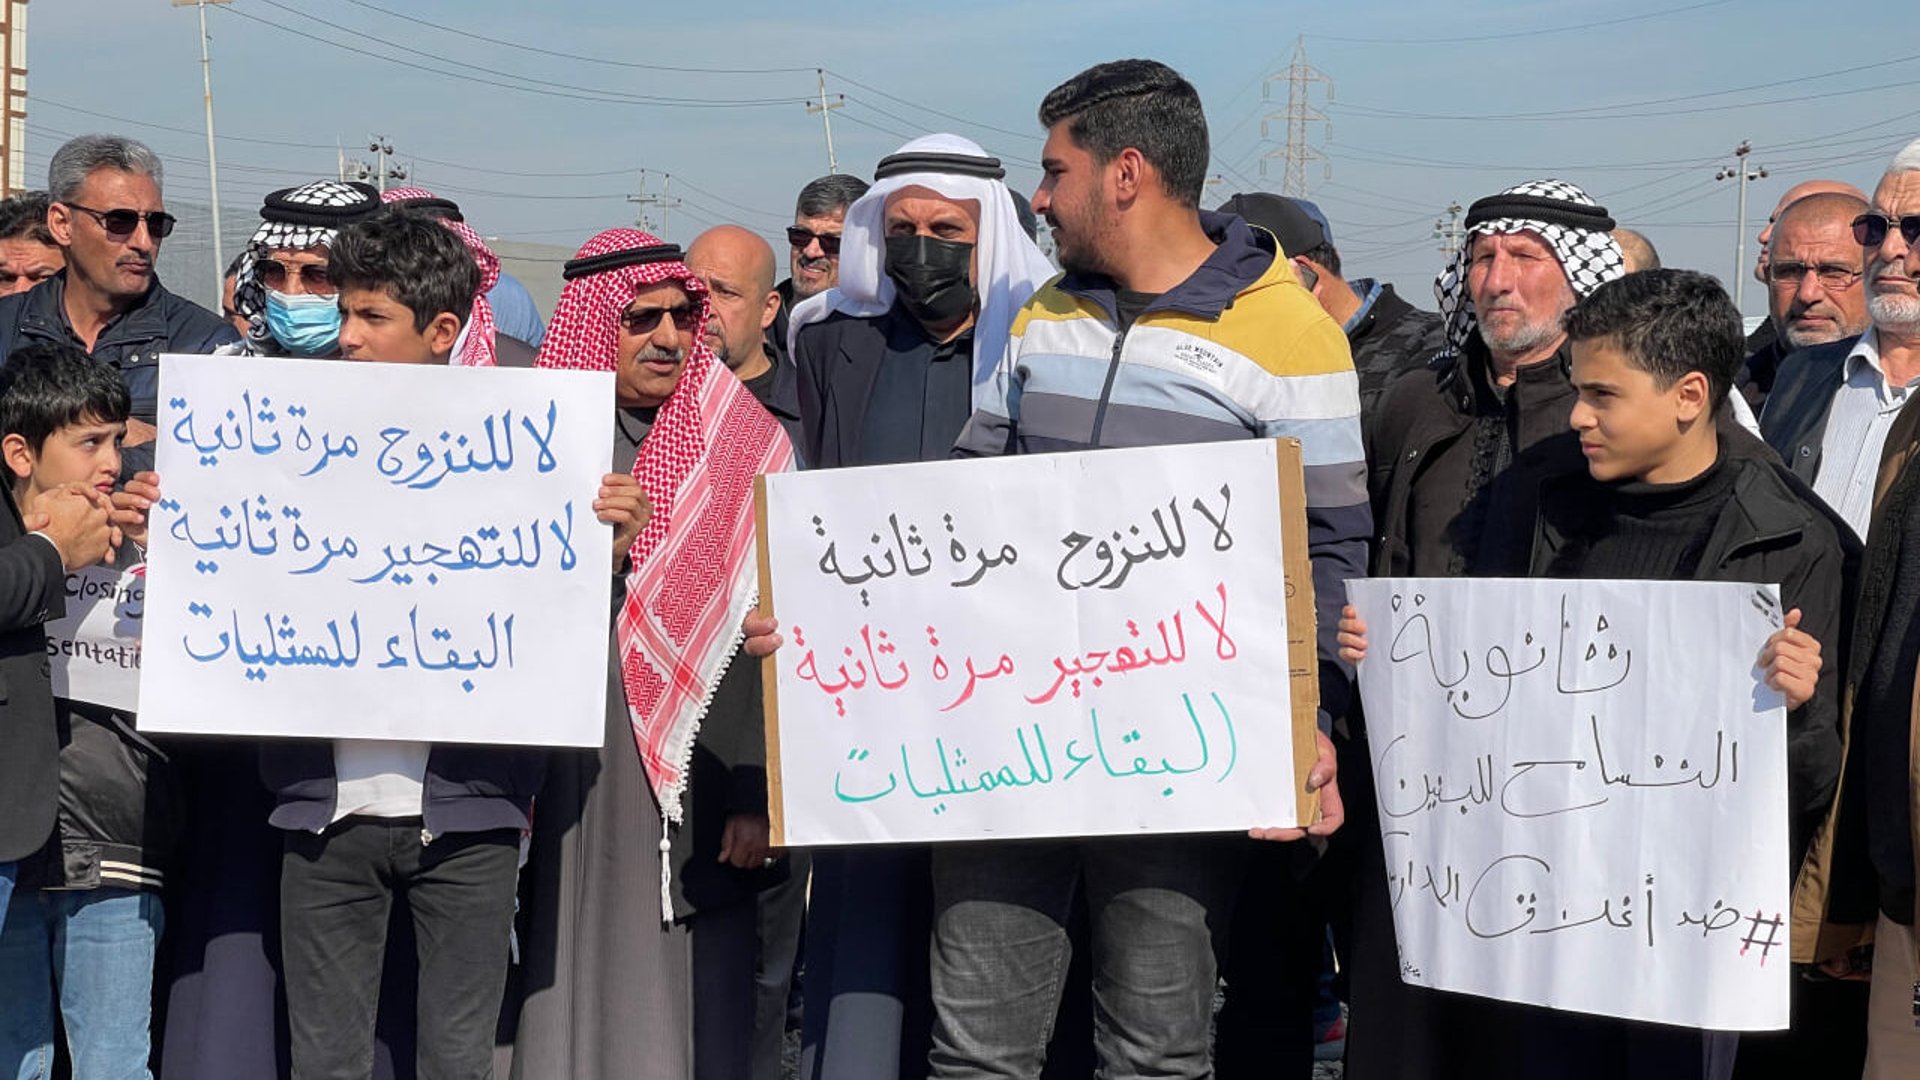 فيديو: عرب أربيل يتظاهرون ضد قرار بغداد بإغلاق المدارس العربية